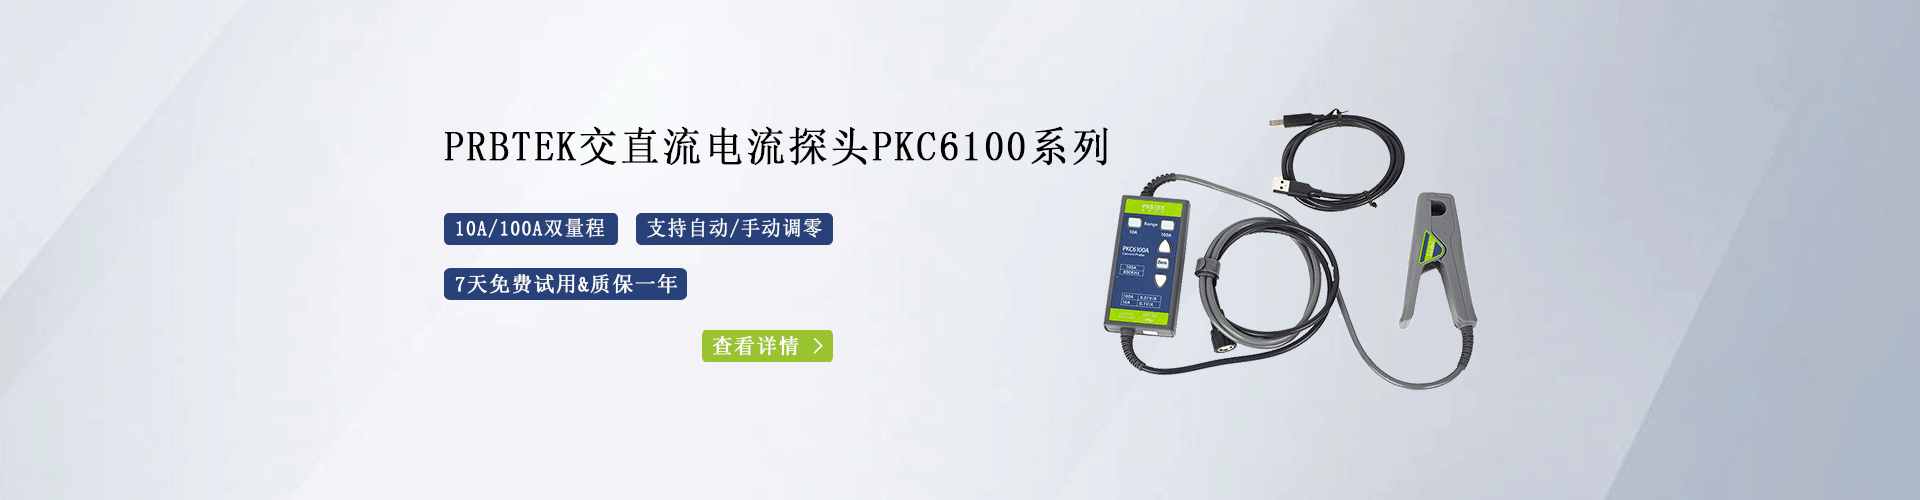 普科电流探头PKC6100系列